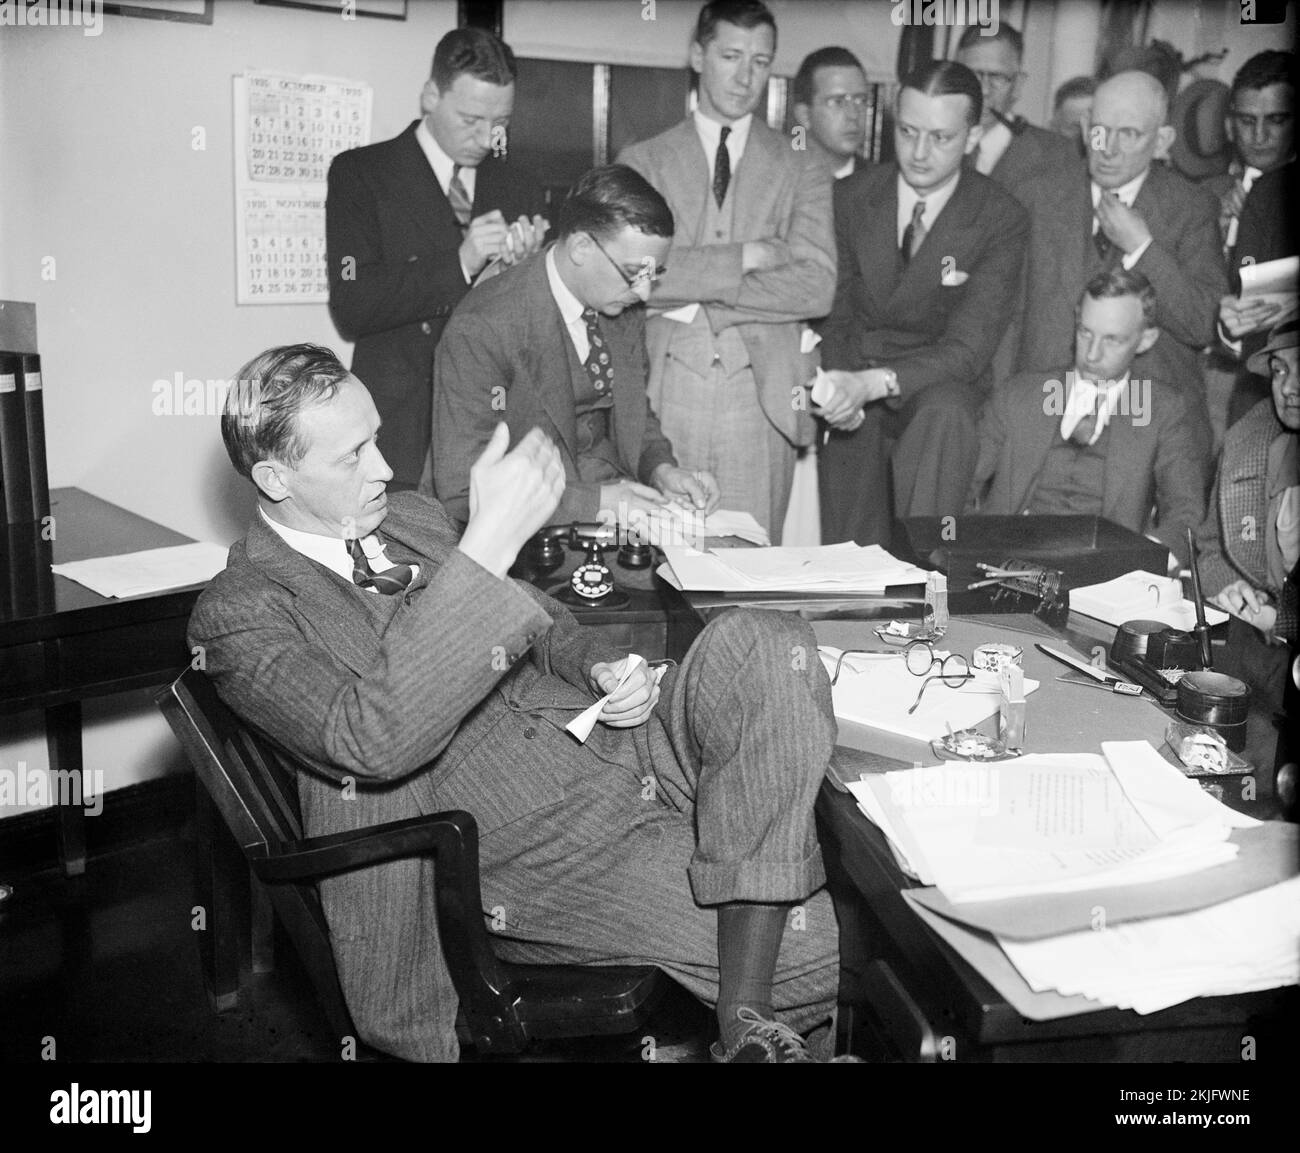 FERA-Administrator und WPA-Leiter Harry Hopkins im Gespräch mit Reportern (November 1935) Stockfoto